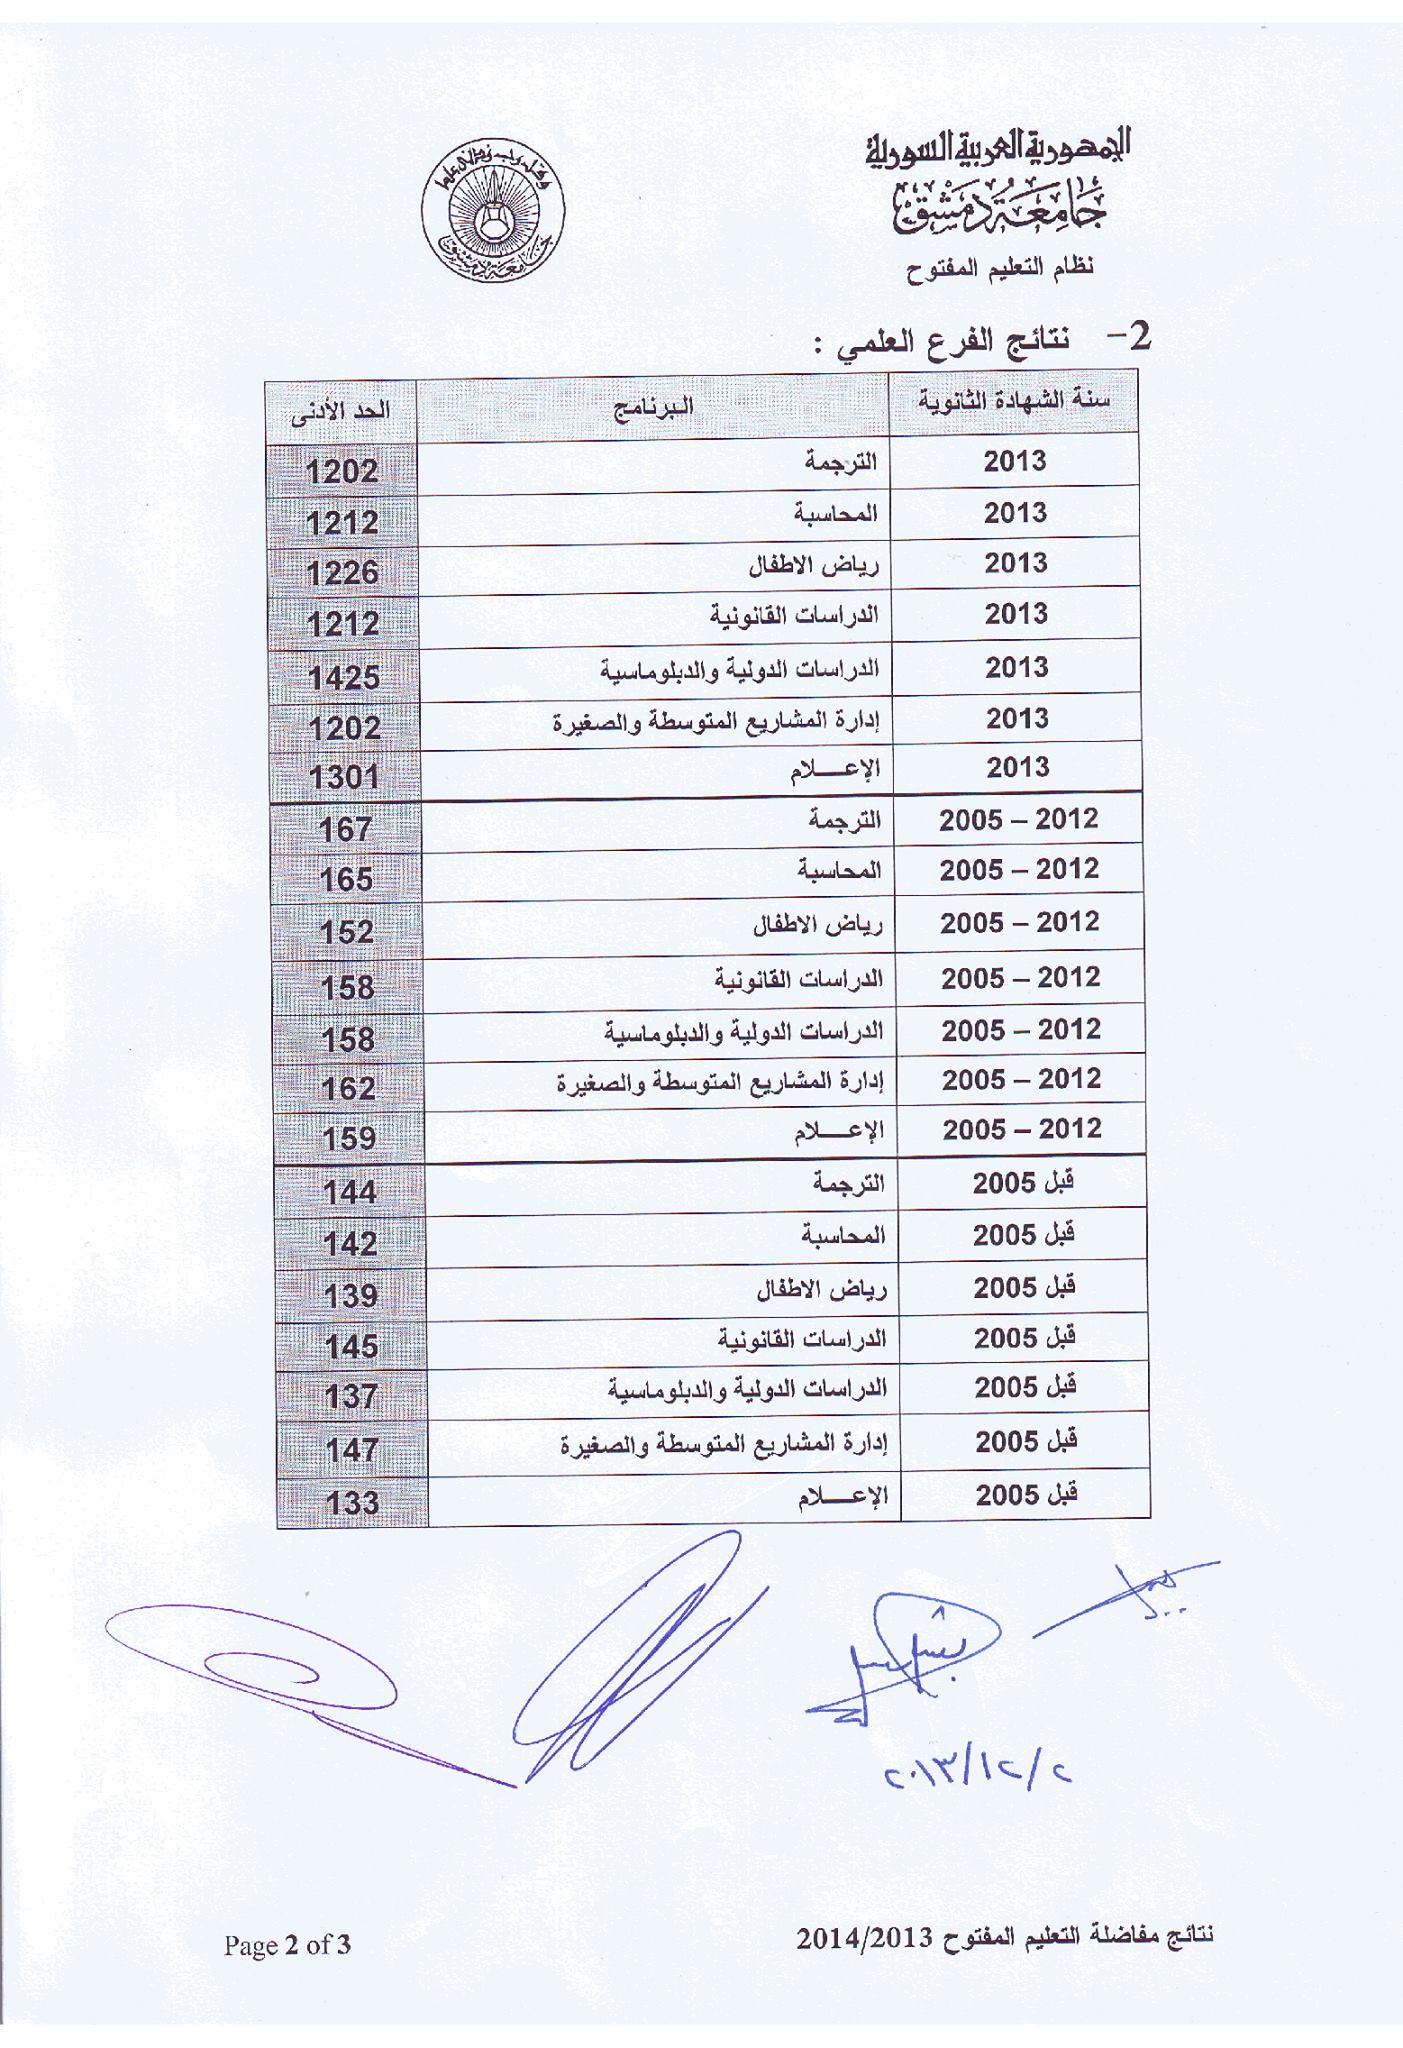 نتائج مفاضلة التعليم المفتوح جامعة دمشق الفرع العلمي 2014